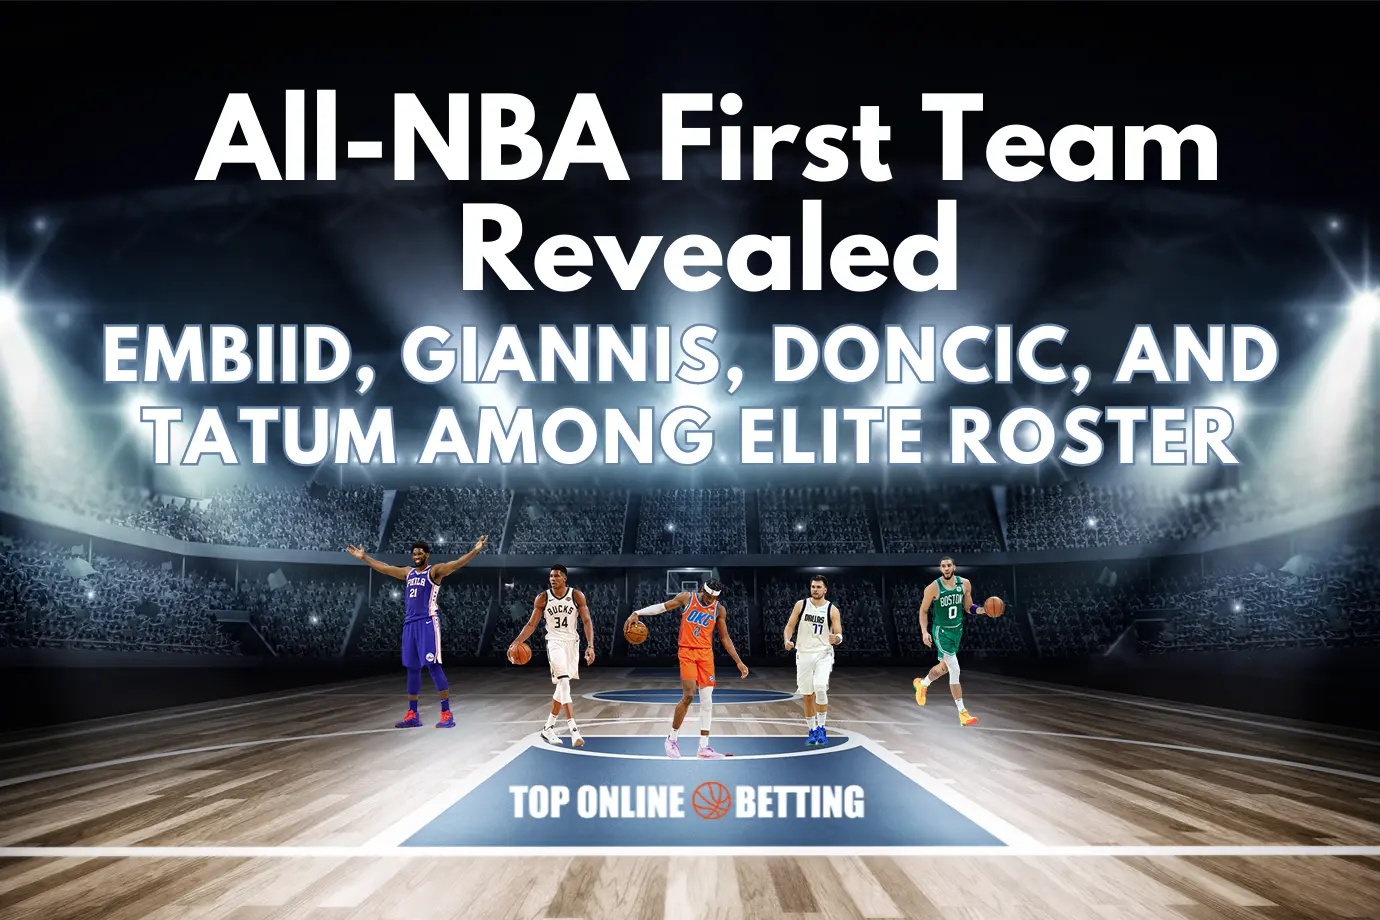 All-NBA First Team Terungkap: Embiid, Giannis, Doncic, dan Tatum Diantara Daftar Elite